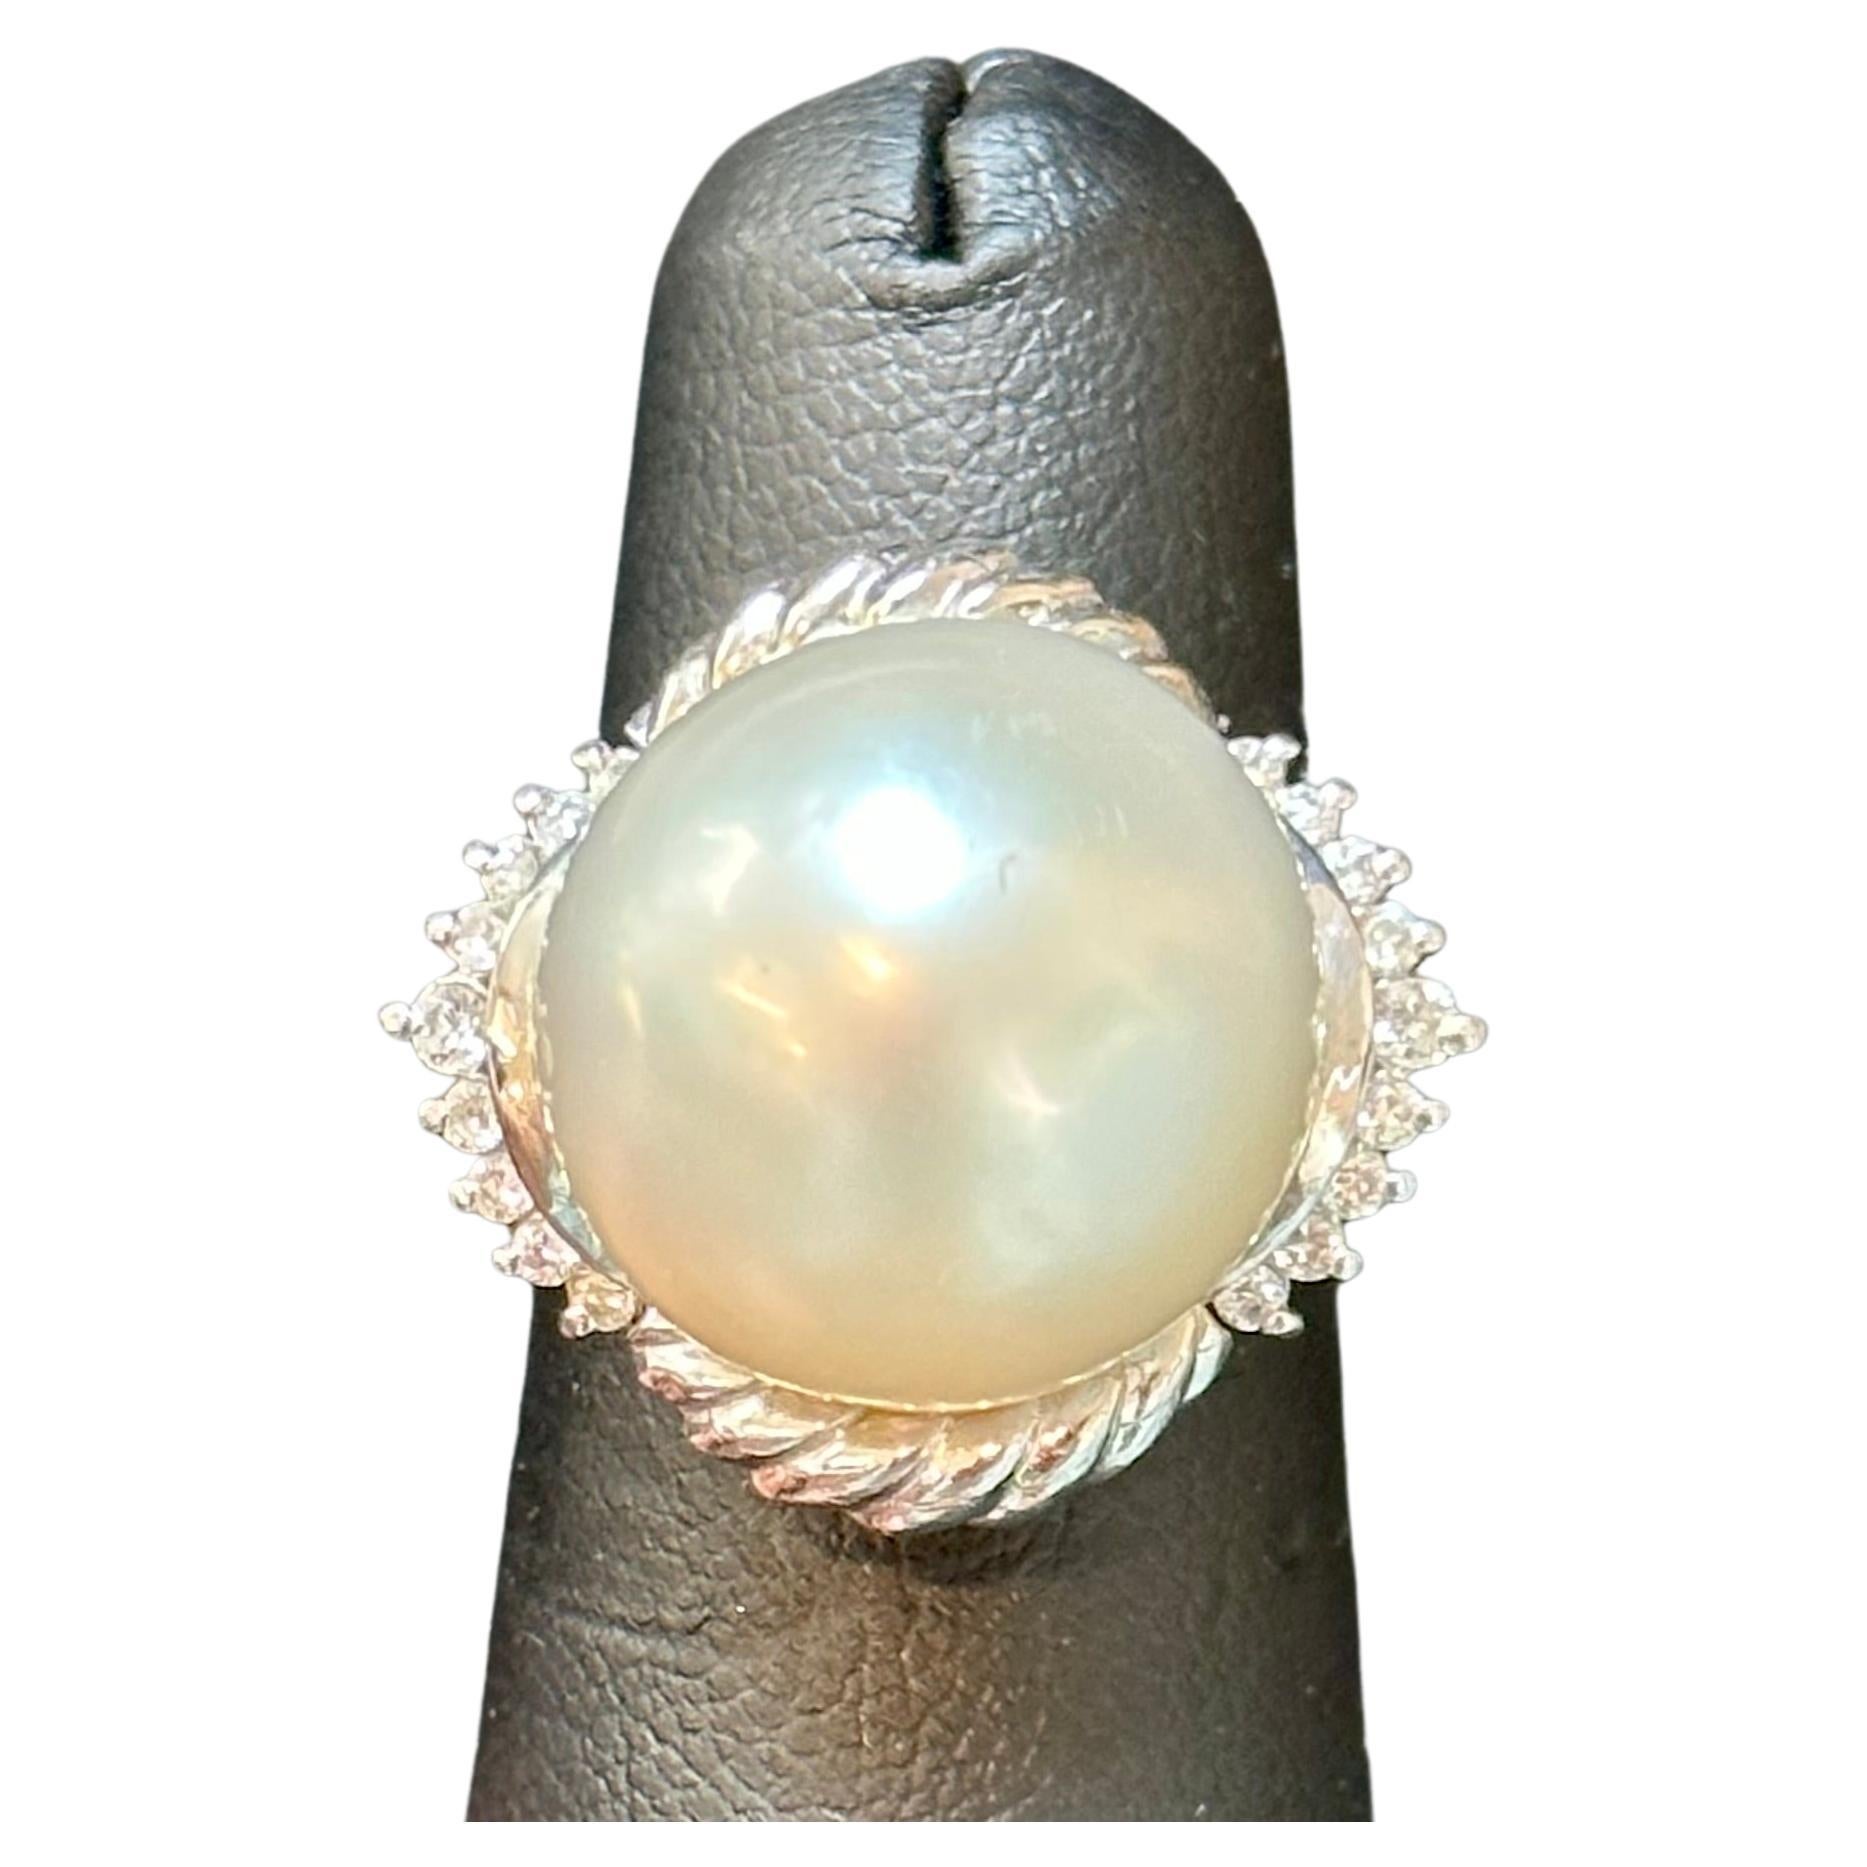 Der prächtige 16-mm-Südseeperlen-Diamanten-Halo-Sunburst-Ring aus Platin ist ein Beispiel für zeitlose Eleganz. Dieser aus Platin gefertigte Cocktailring trägt eine atemberaubende 16 mm große Südsee-Zuchtperle als Herzstück. Die Perle hat eine